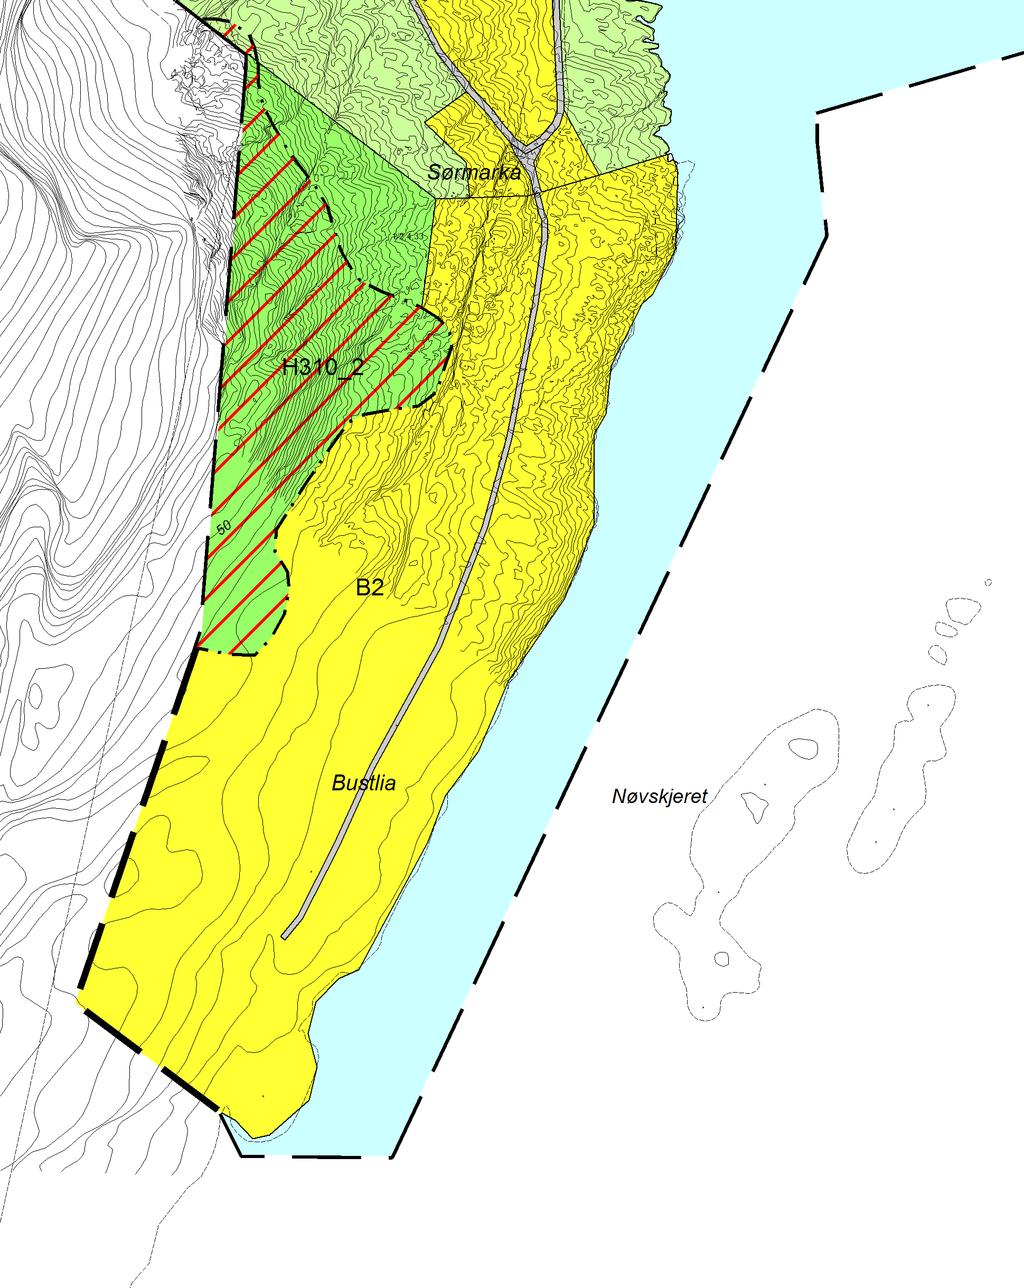 Eiendom: Gnr 1. Bnr 2.,4.,33. Lurøy kommune Forslag: Et nytt boligområde i sør Lovund, i Sørmarka, langs veien til sprengstofflageret. Hele området er på ca 130 daa.